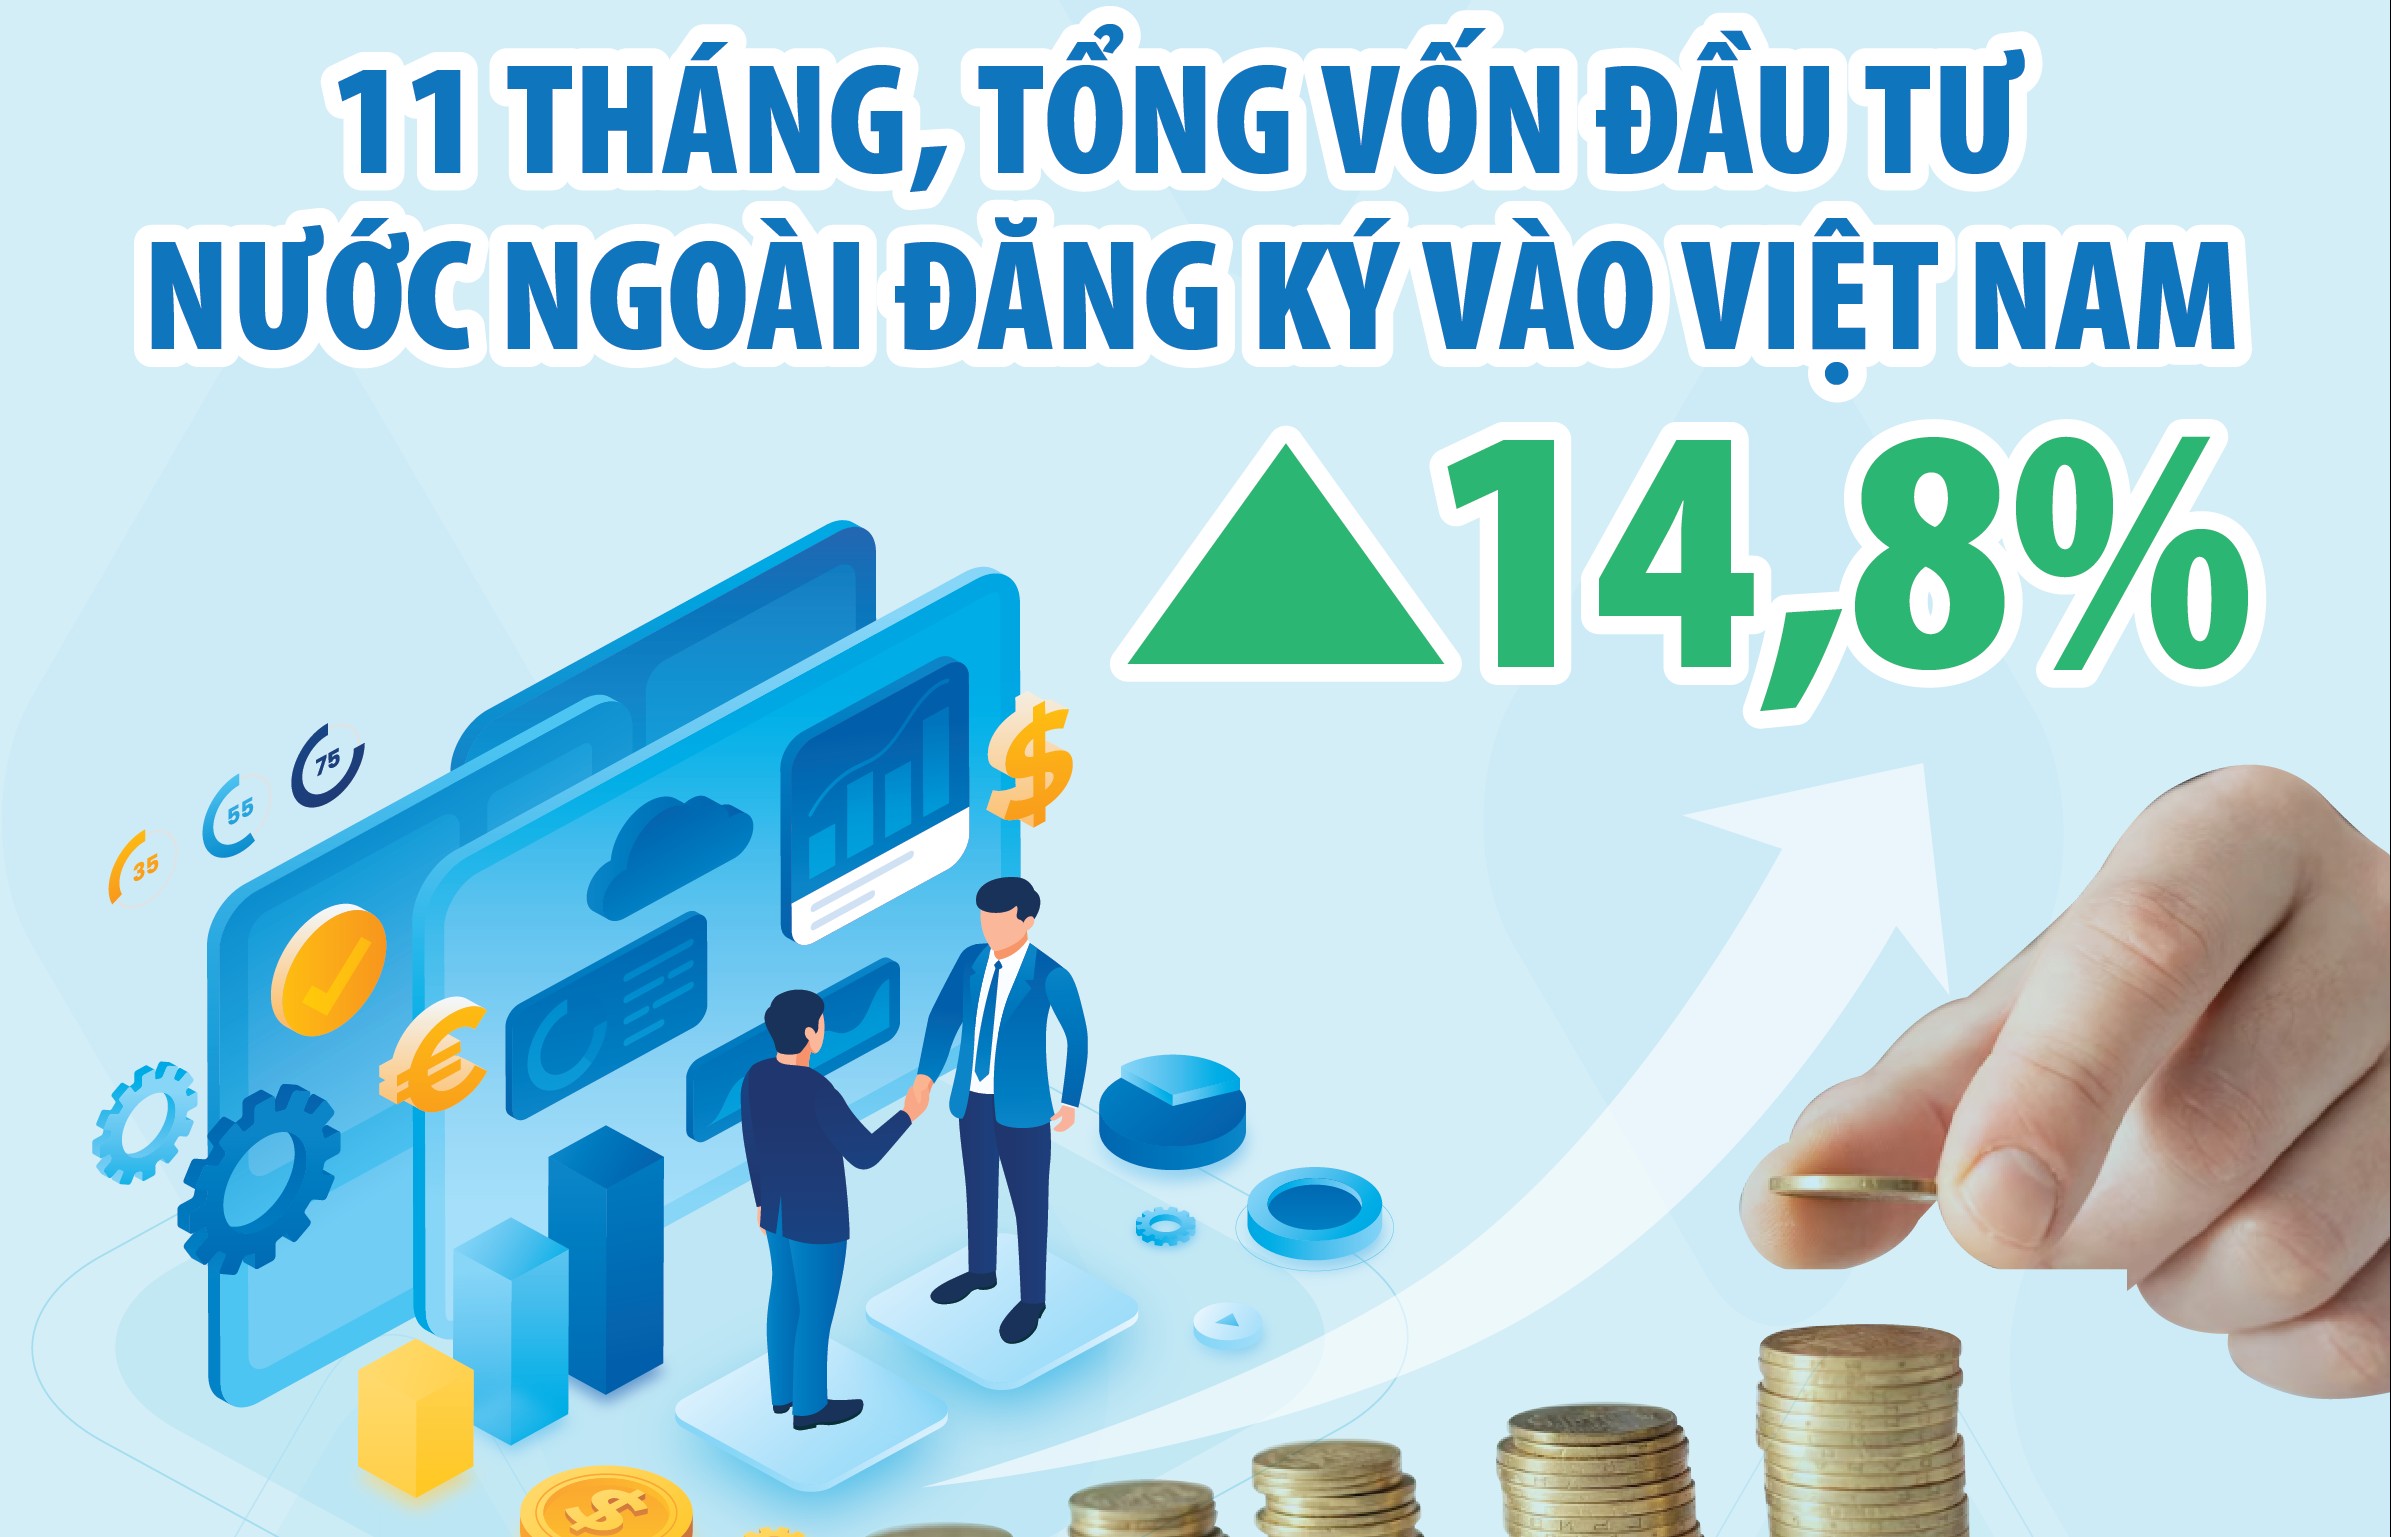 Tổng vốn FDI đăng ký vào Việt Nam trong 11 tháng đạt hơn 28,85 tỷ USD